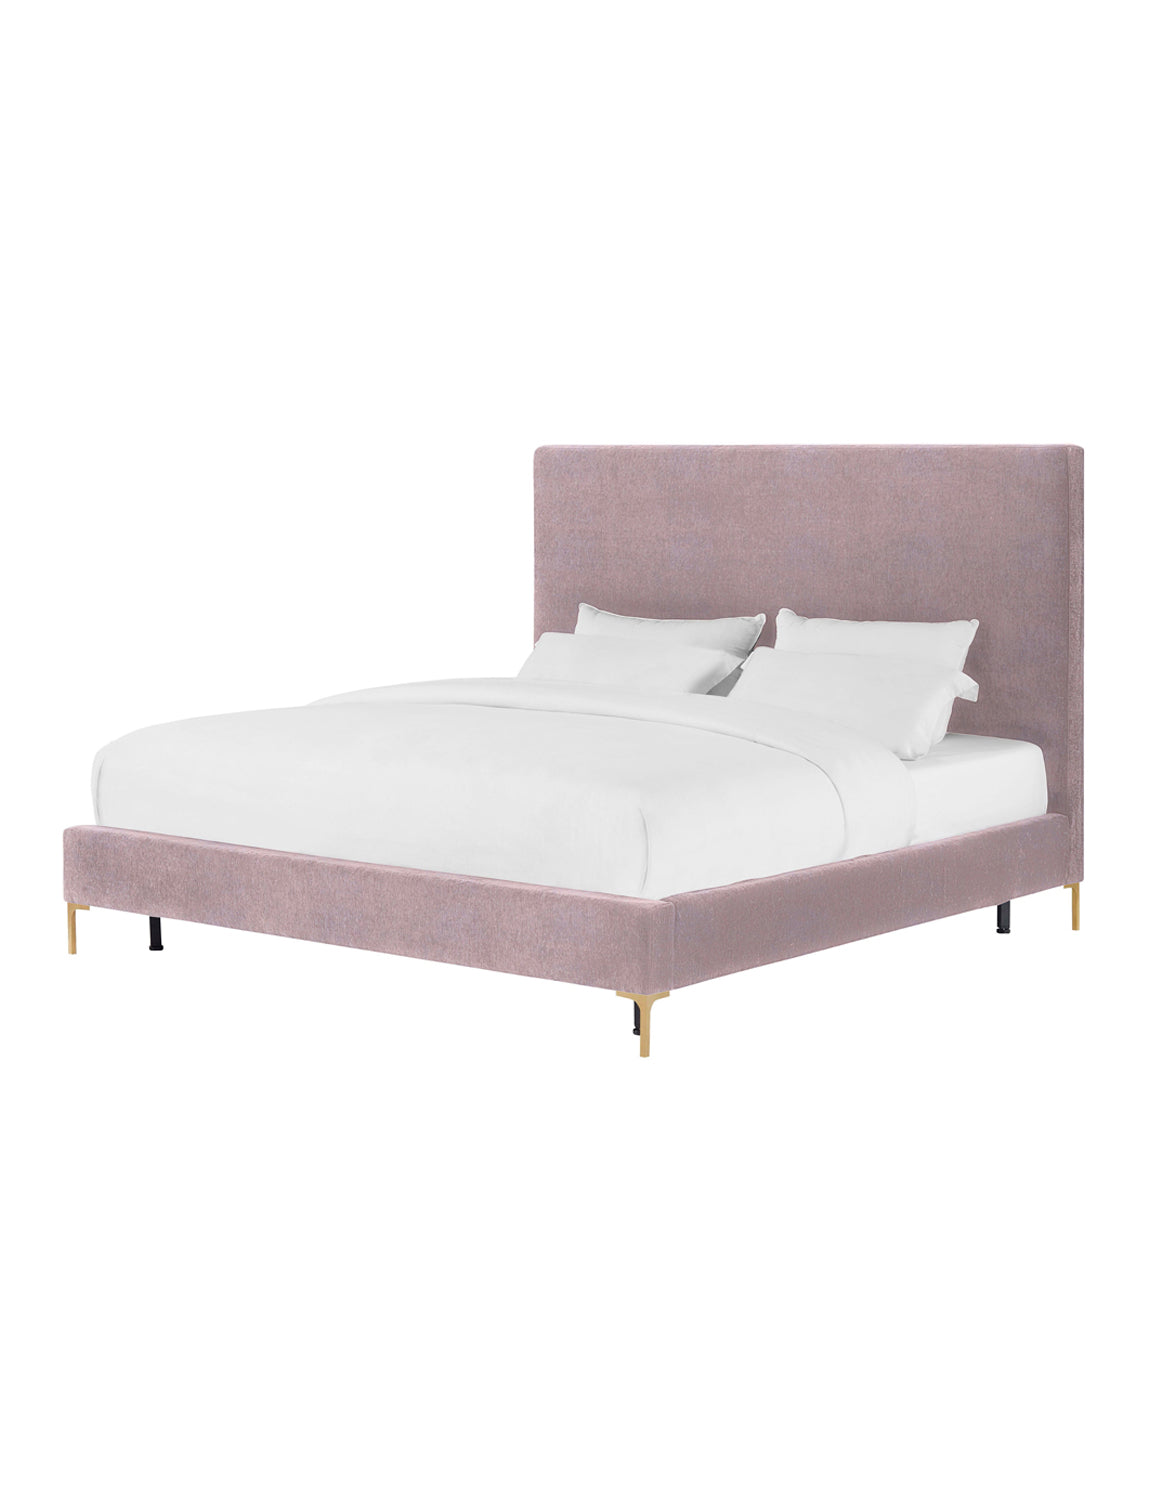 Dandelion Bed, blush